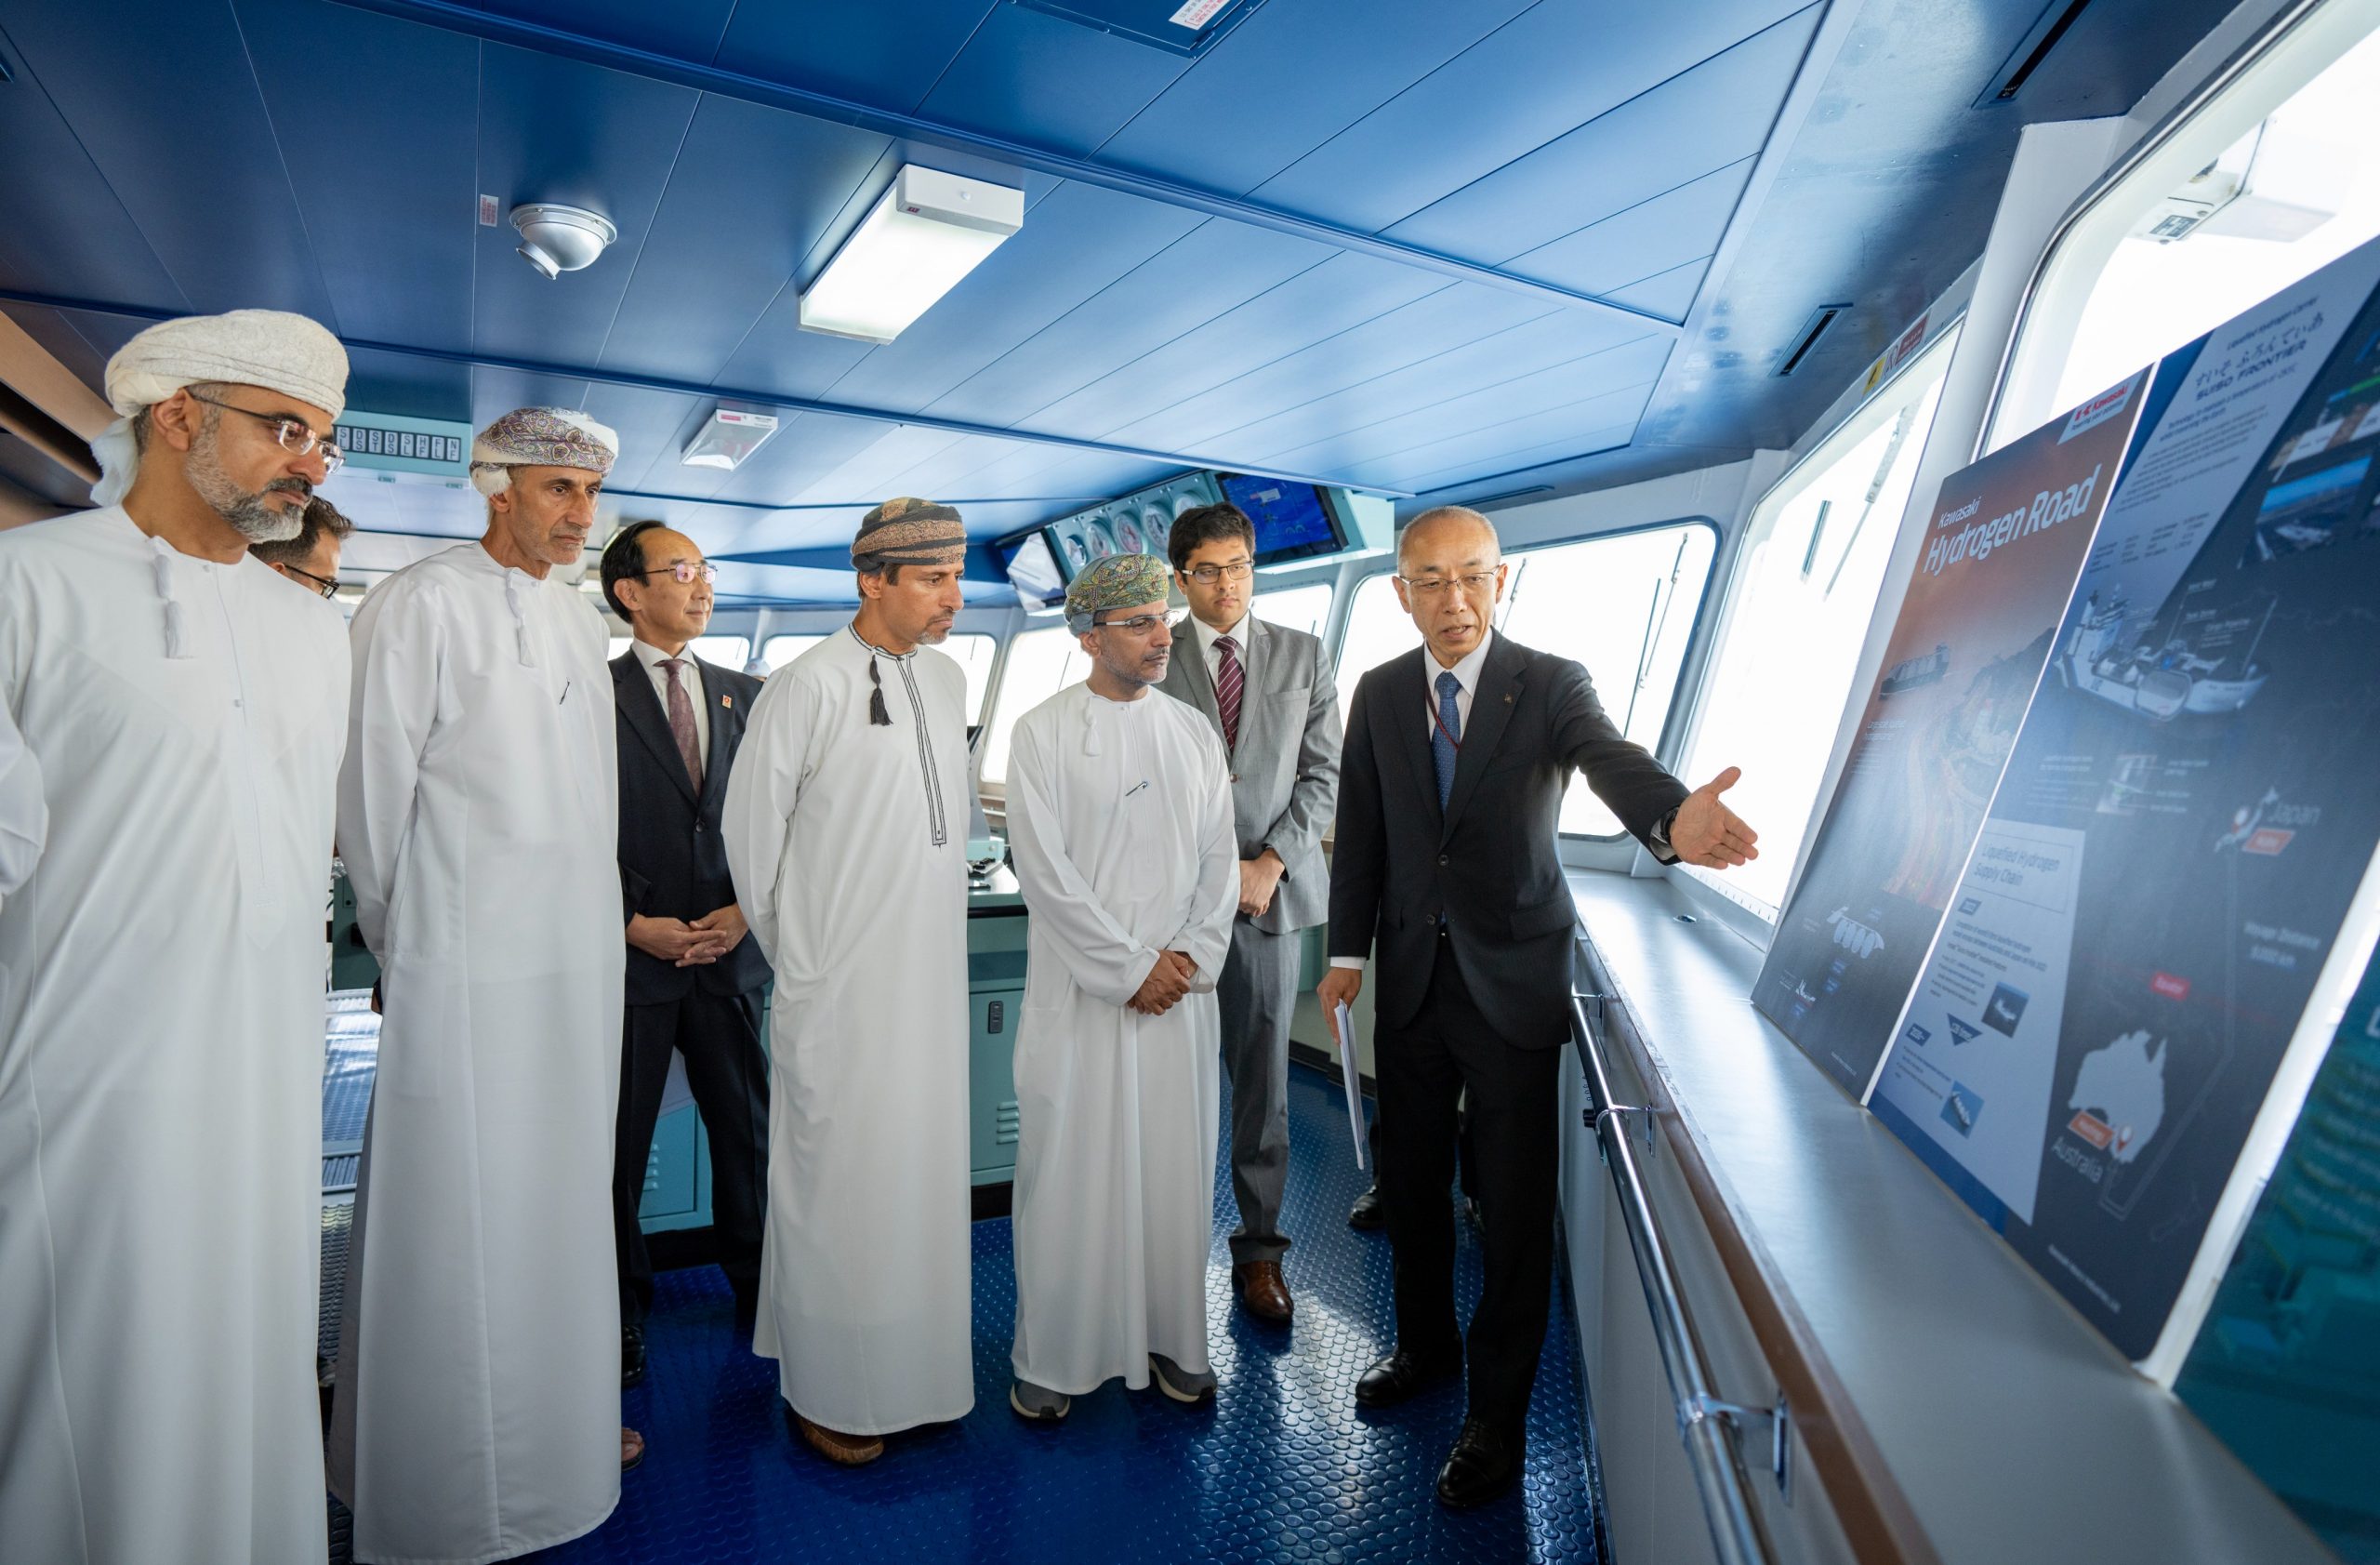 العوفي يتفقّد أول ناقلة بحرية في العالم لنقل الهيدروجين المسال- الصورة من وزارة الطاقة والمعادن في سلطنة عمان